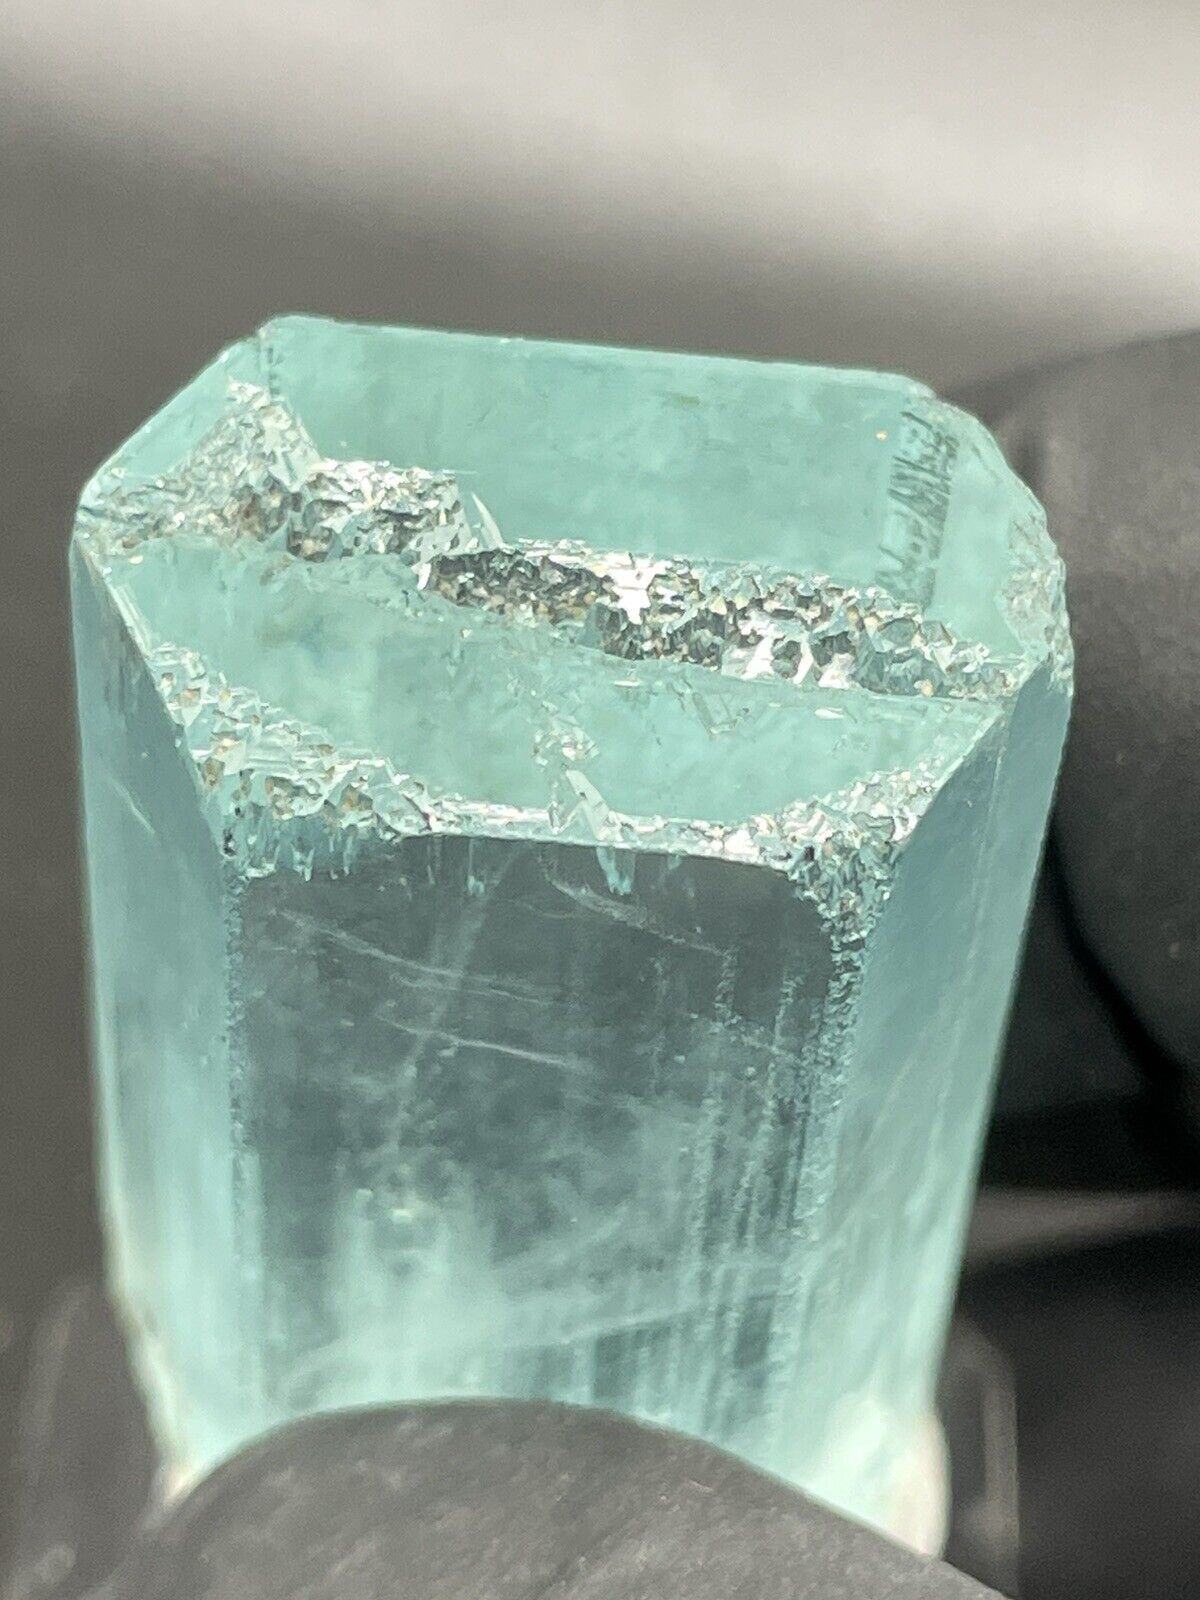 33.6g Gemmy Aquamarine Crystal With Etched Termination Shigar Pakistan